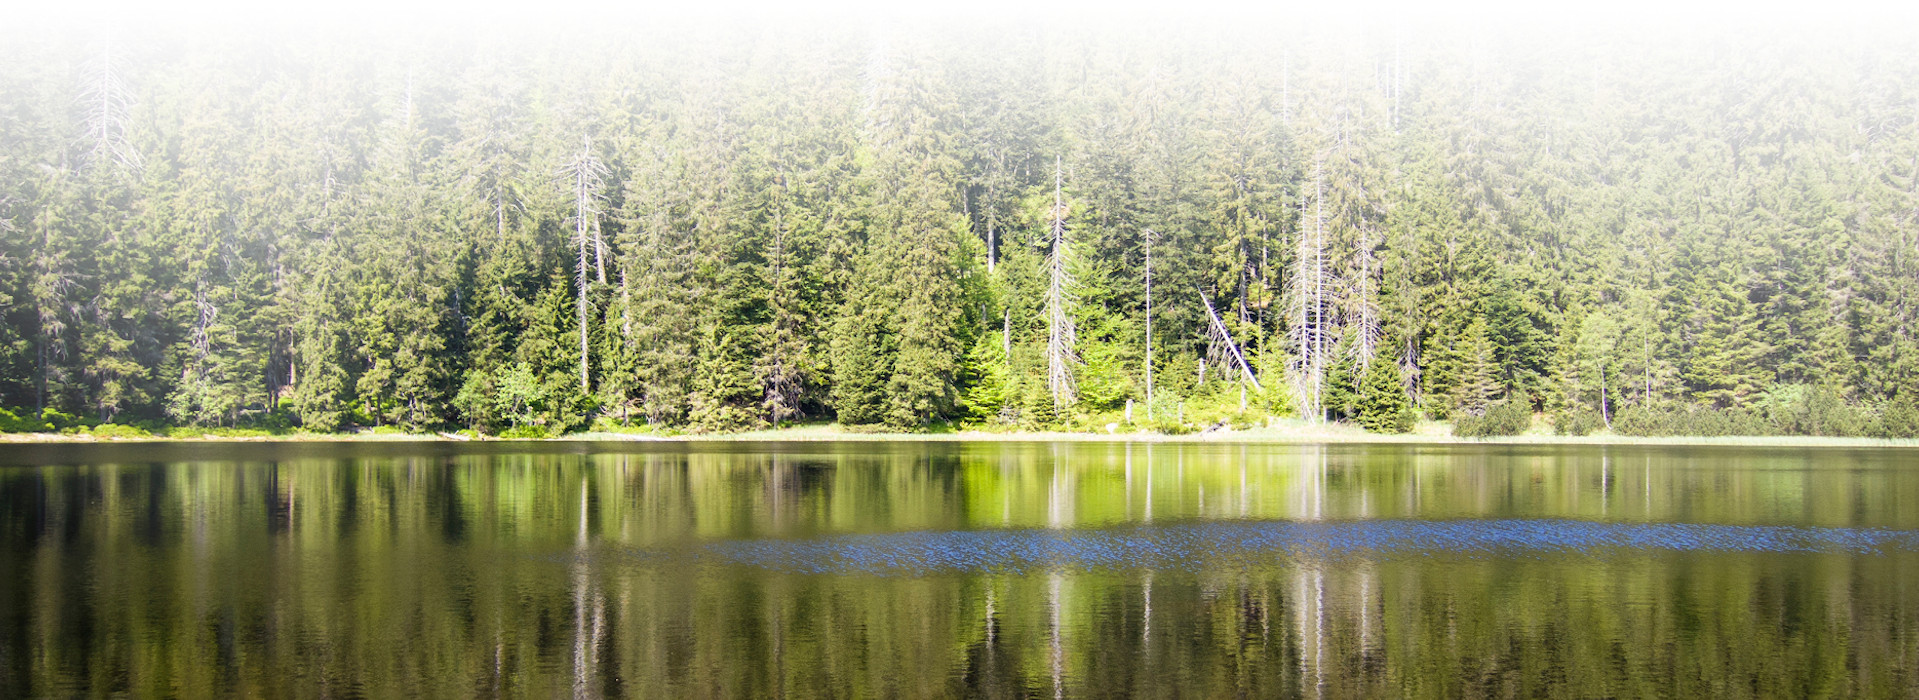 Wasserfläche mit Nadelbäumen im Hintergrund, die sich im Wasser spiegeln. Foto: Arne Kolb